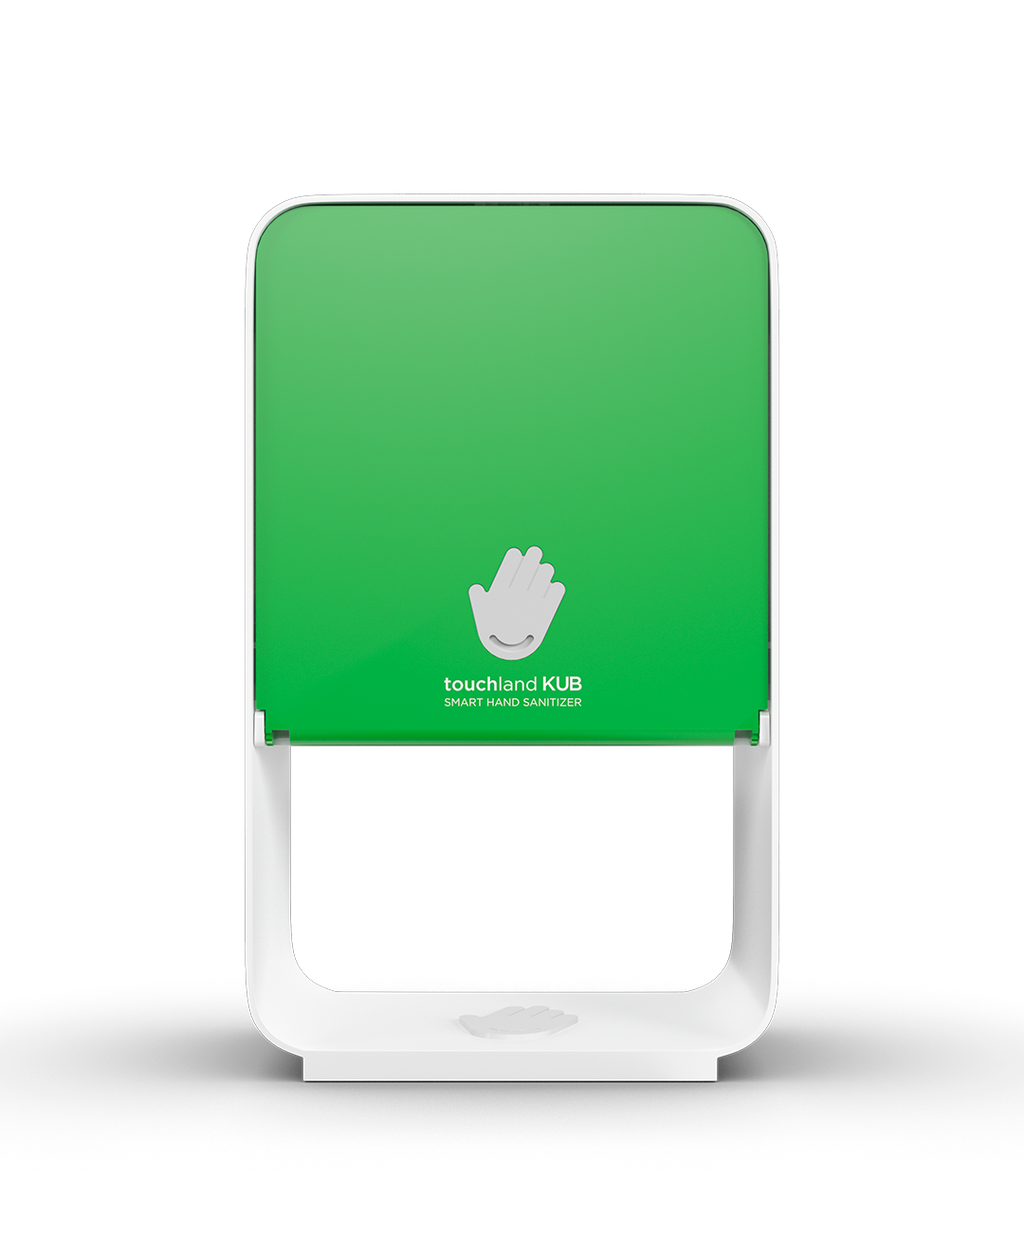 Forest green kub dispenser on white background